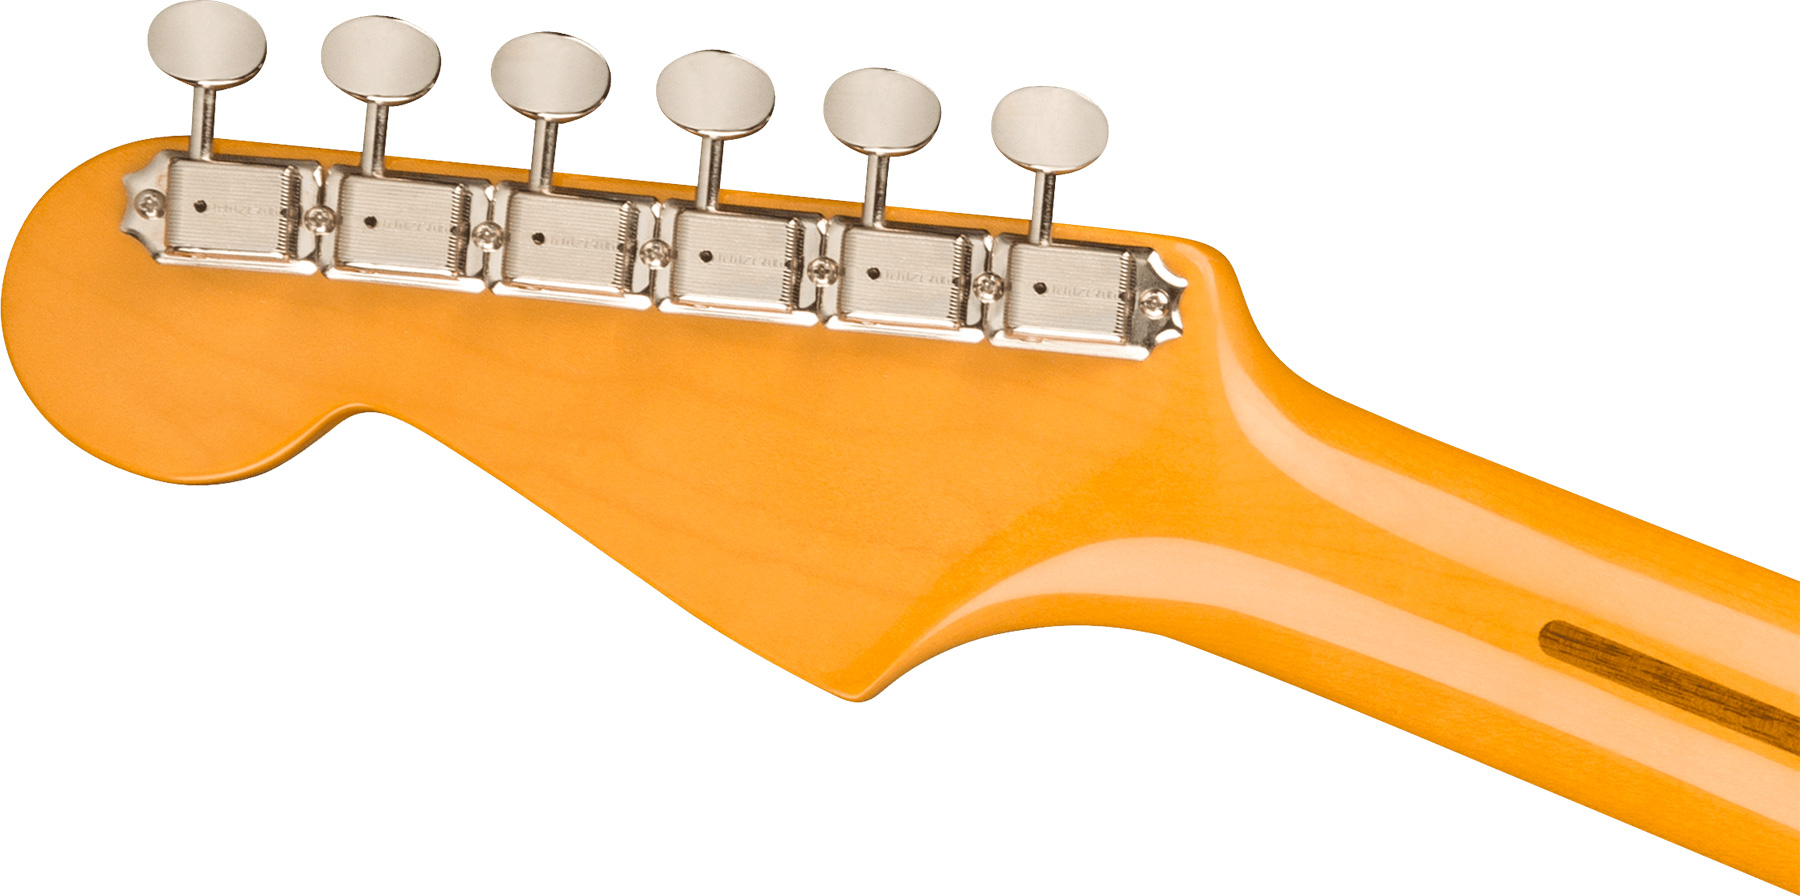 Fender Strat 1957 American Vintage Ii Usa 3s Trem Mn - 2-color Sunburst - Guitare Électrique Forme Str - Variation 3